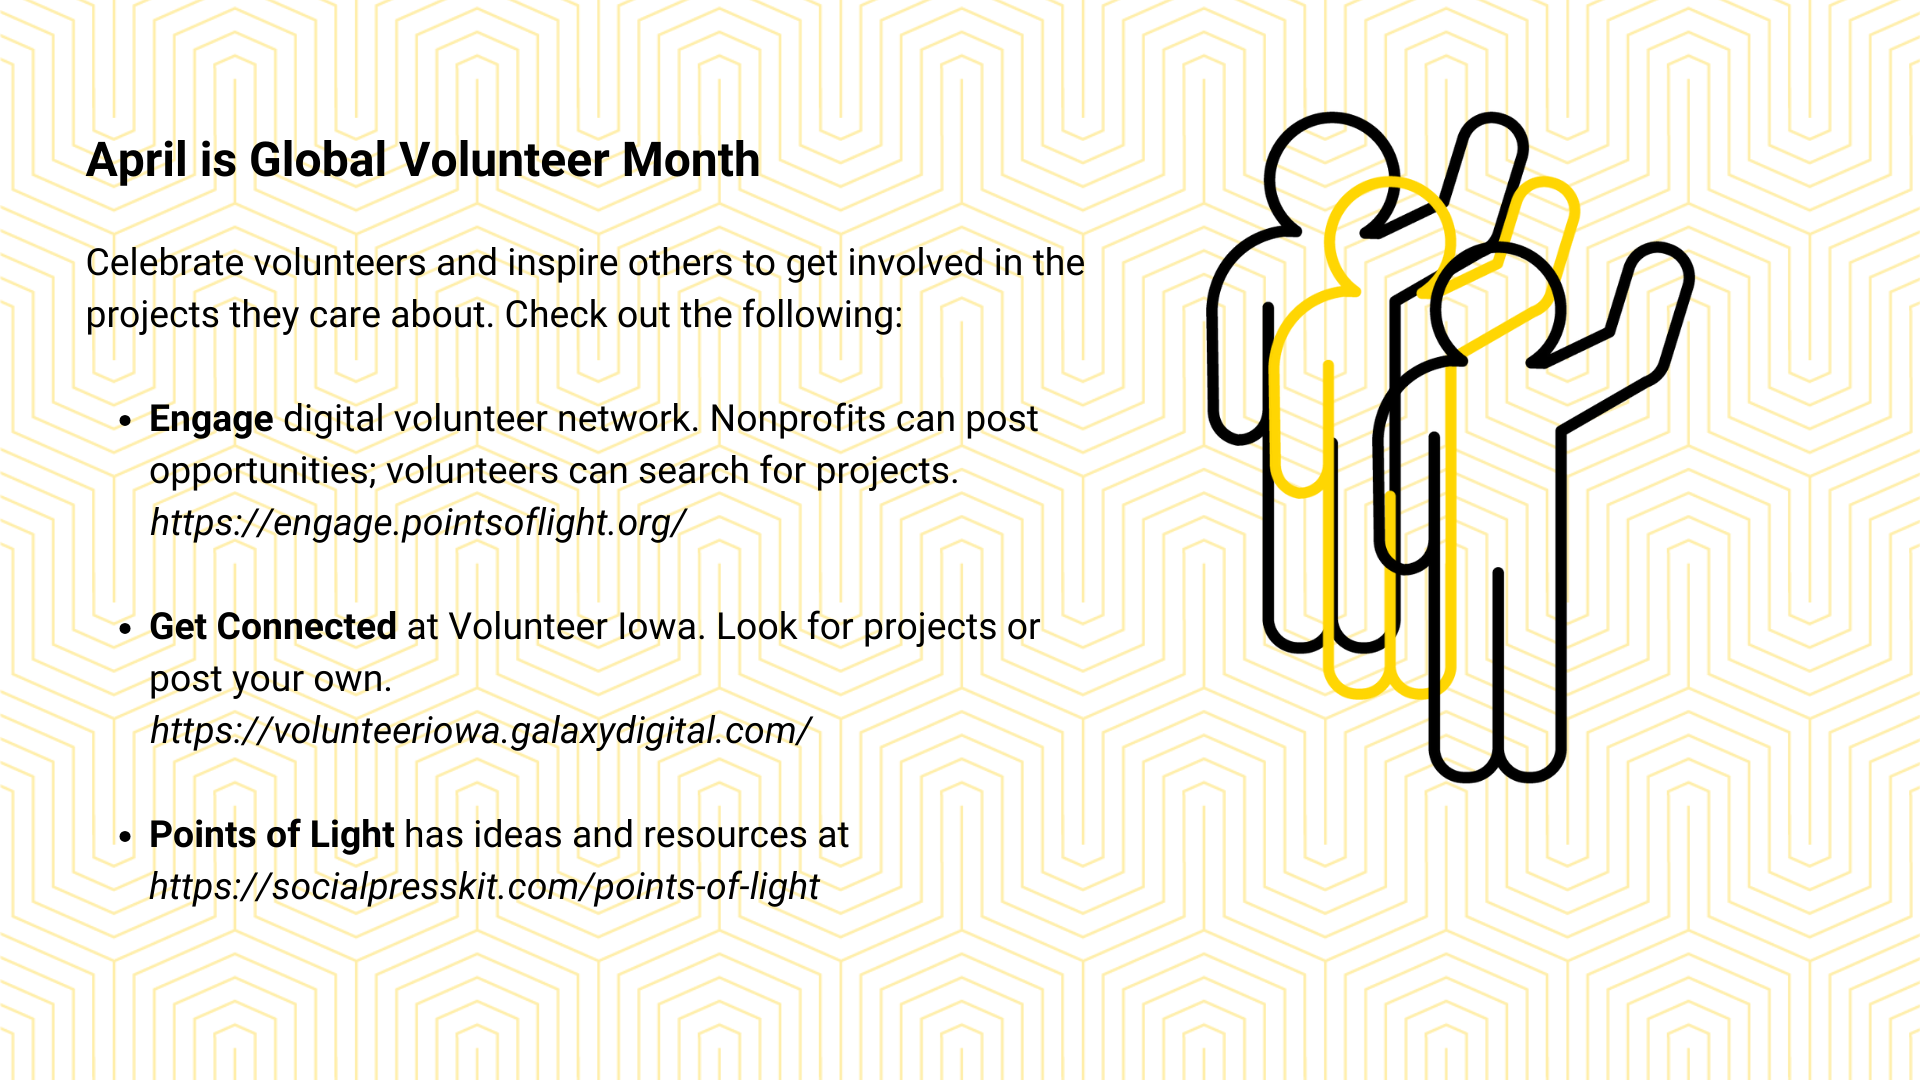 April is Global Volunteer Month